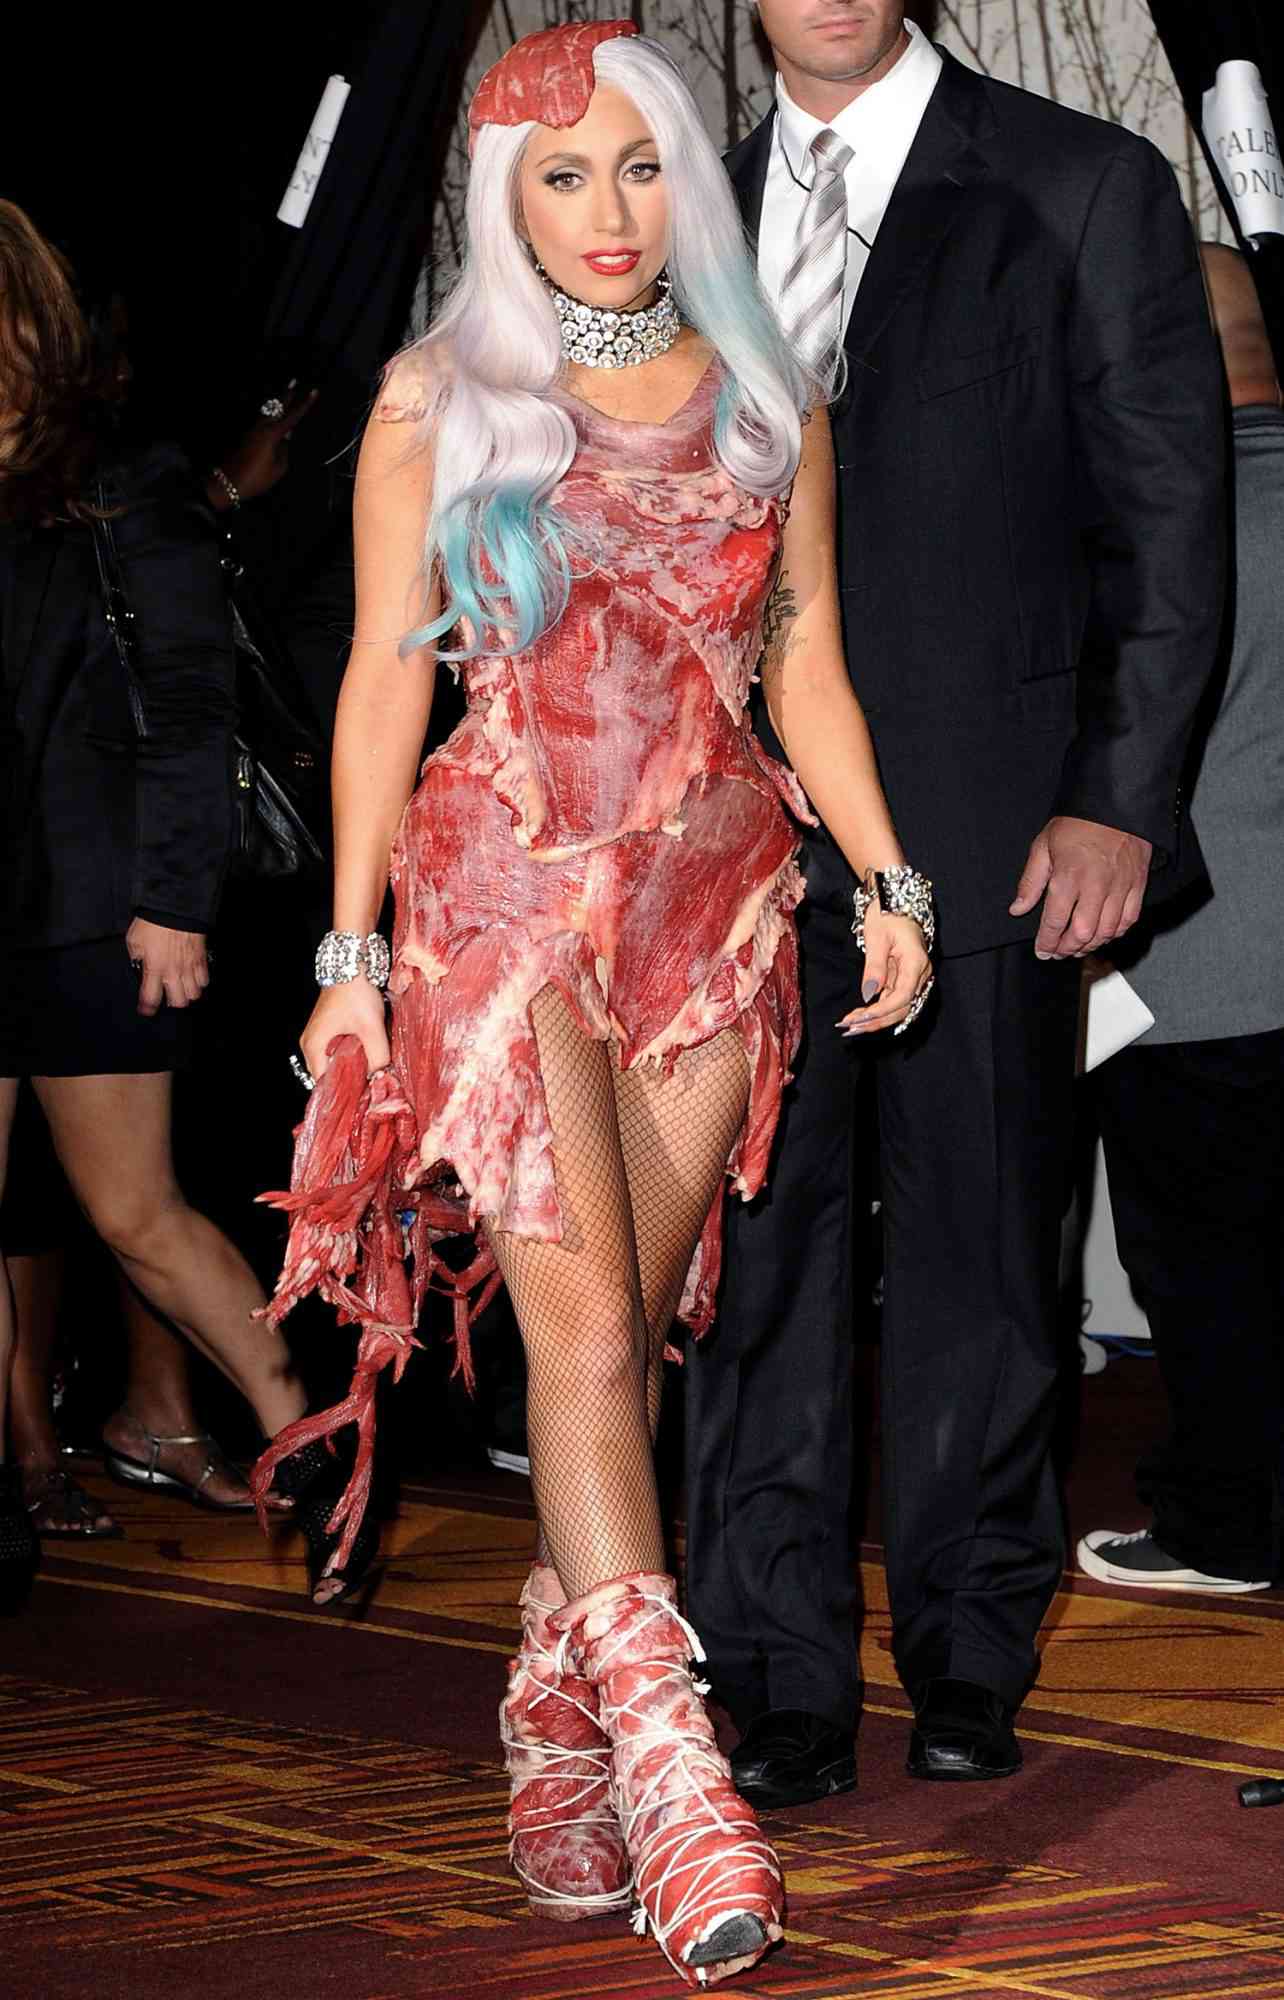 Lady Gaga at the 2010 MTV Video Music Awards